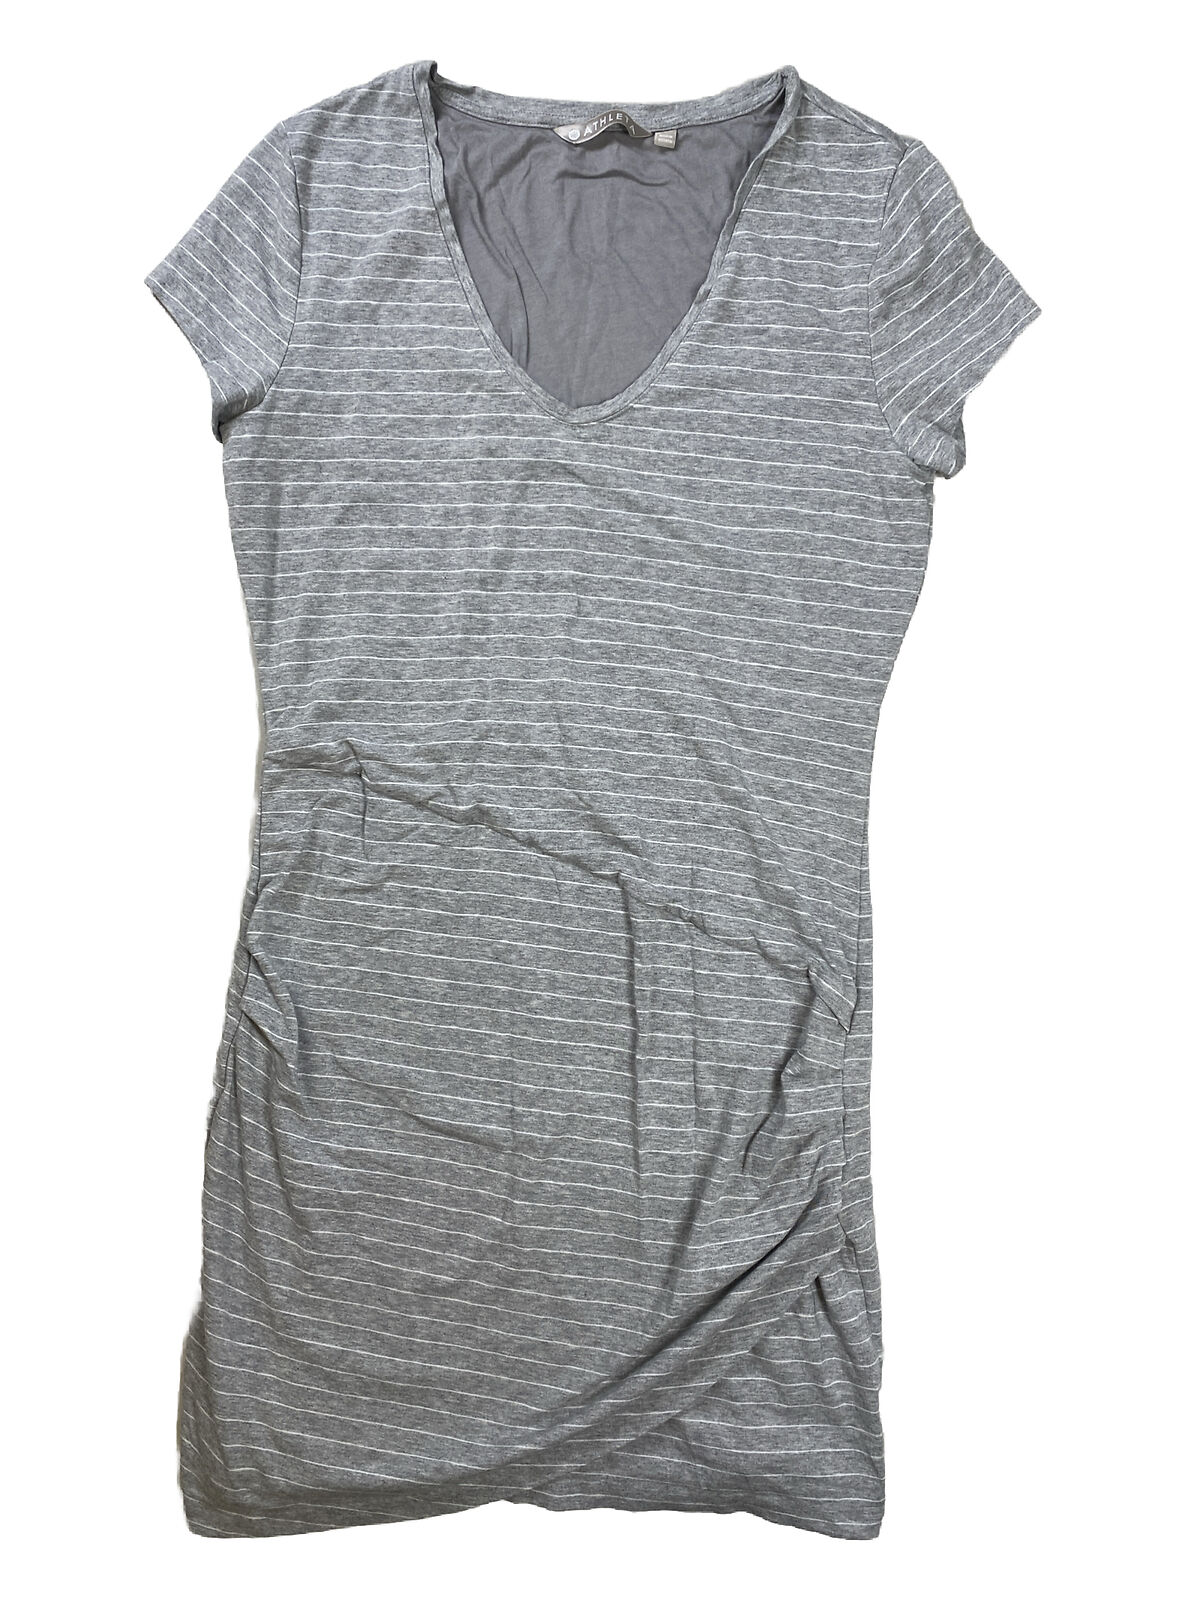 Athleta Vestido estilo camiseta de manga corta con rayas centrales en gris para mujer - L